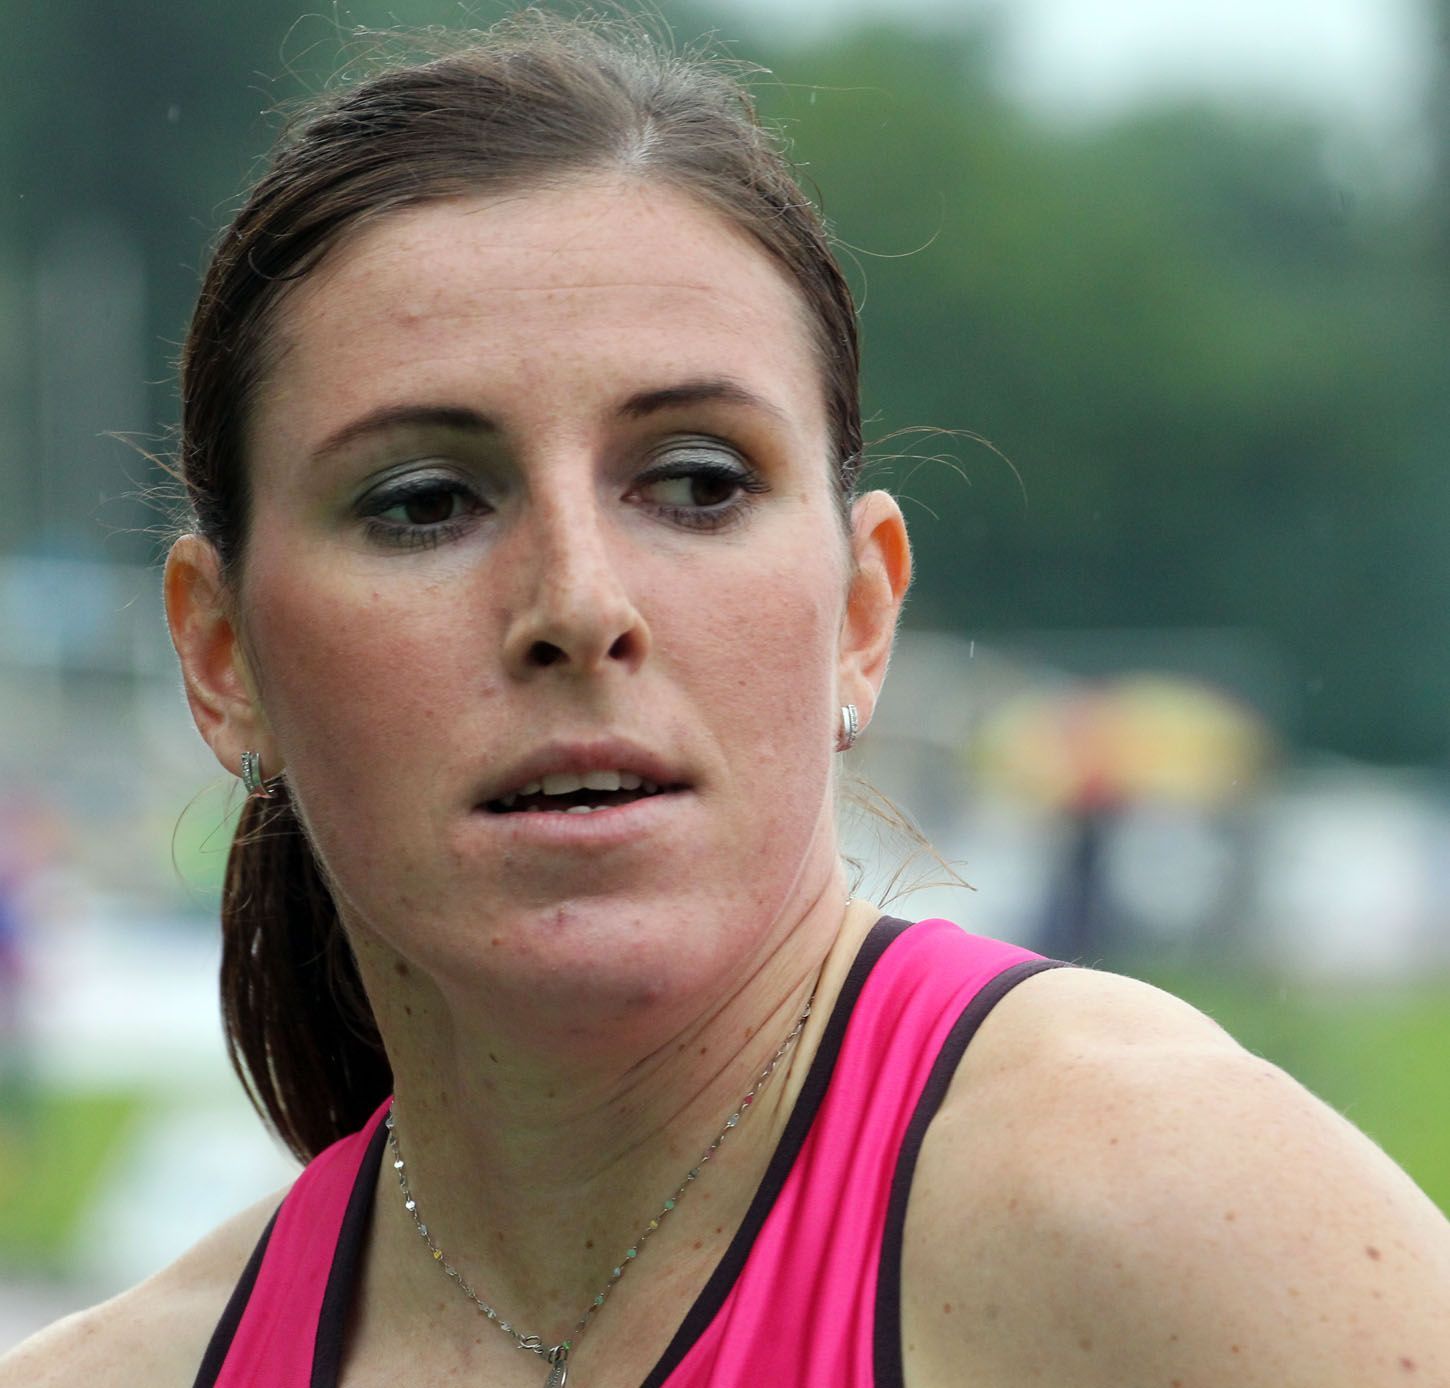 Atletka, Memoriál Josefa Odložila 2013: 400 m přek., Zuzana Hejnová